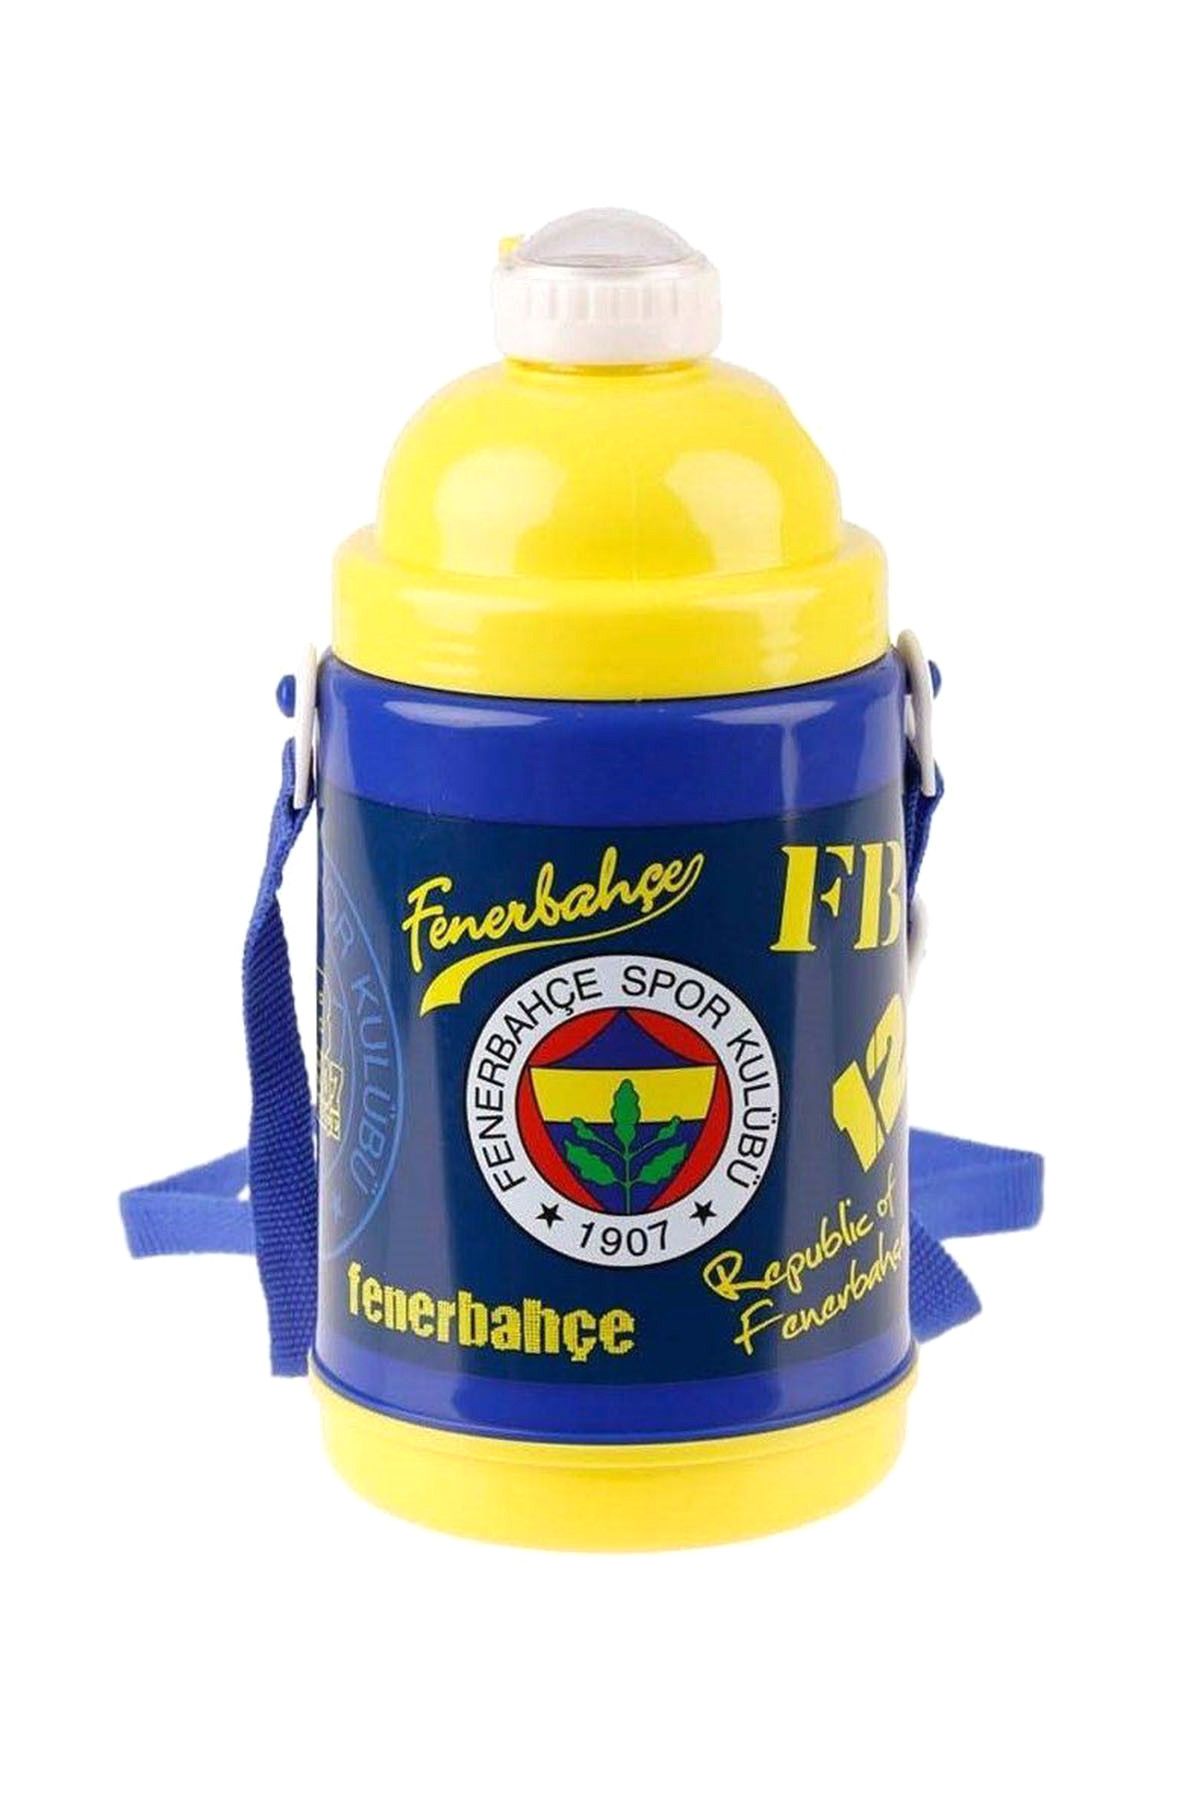 Fenerbahçe Fenerbahçe Çelik Matara (Hakan Çanta 78101)